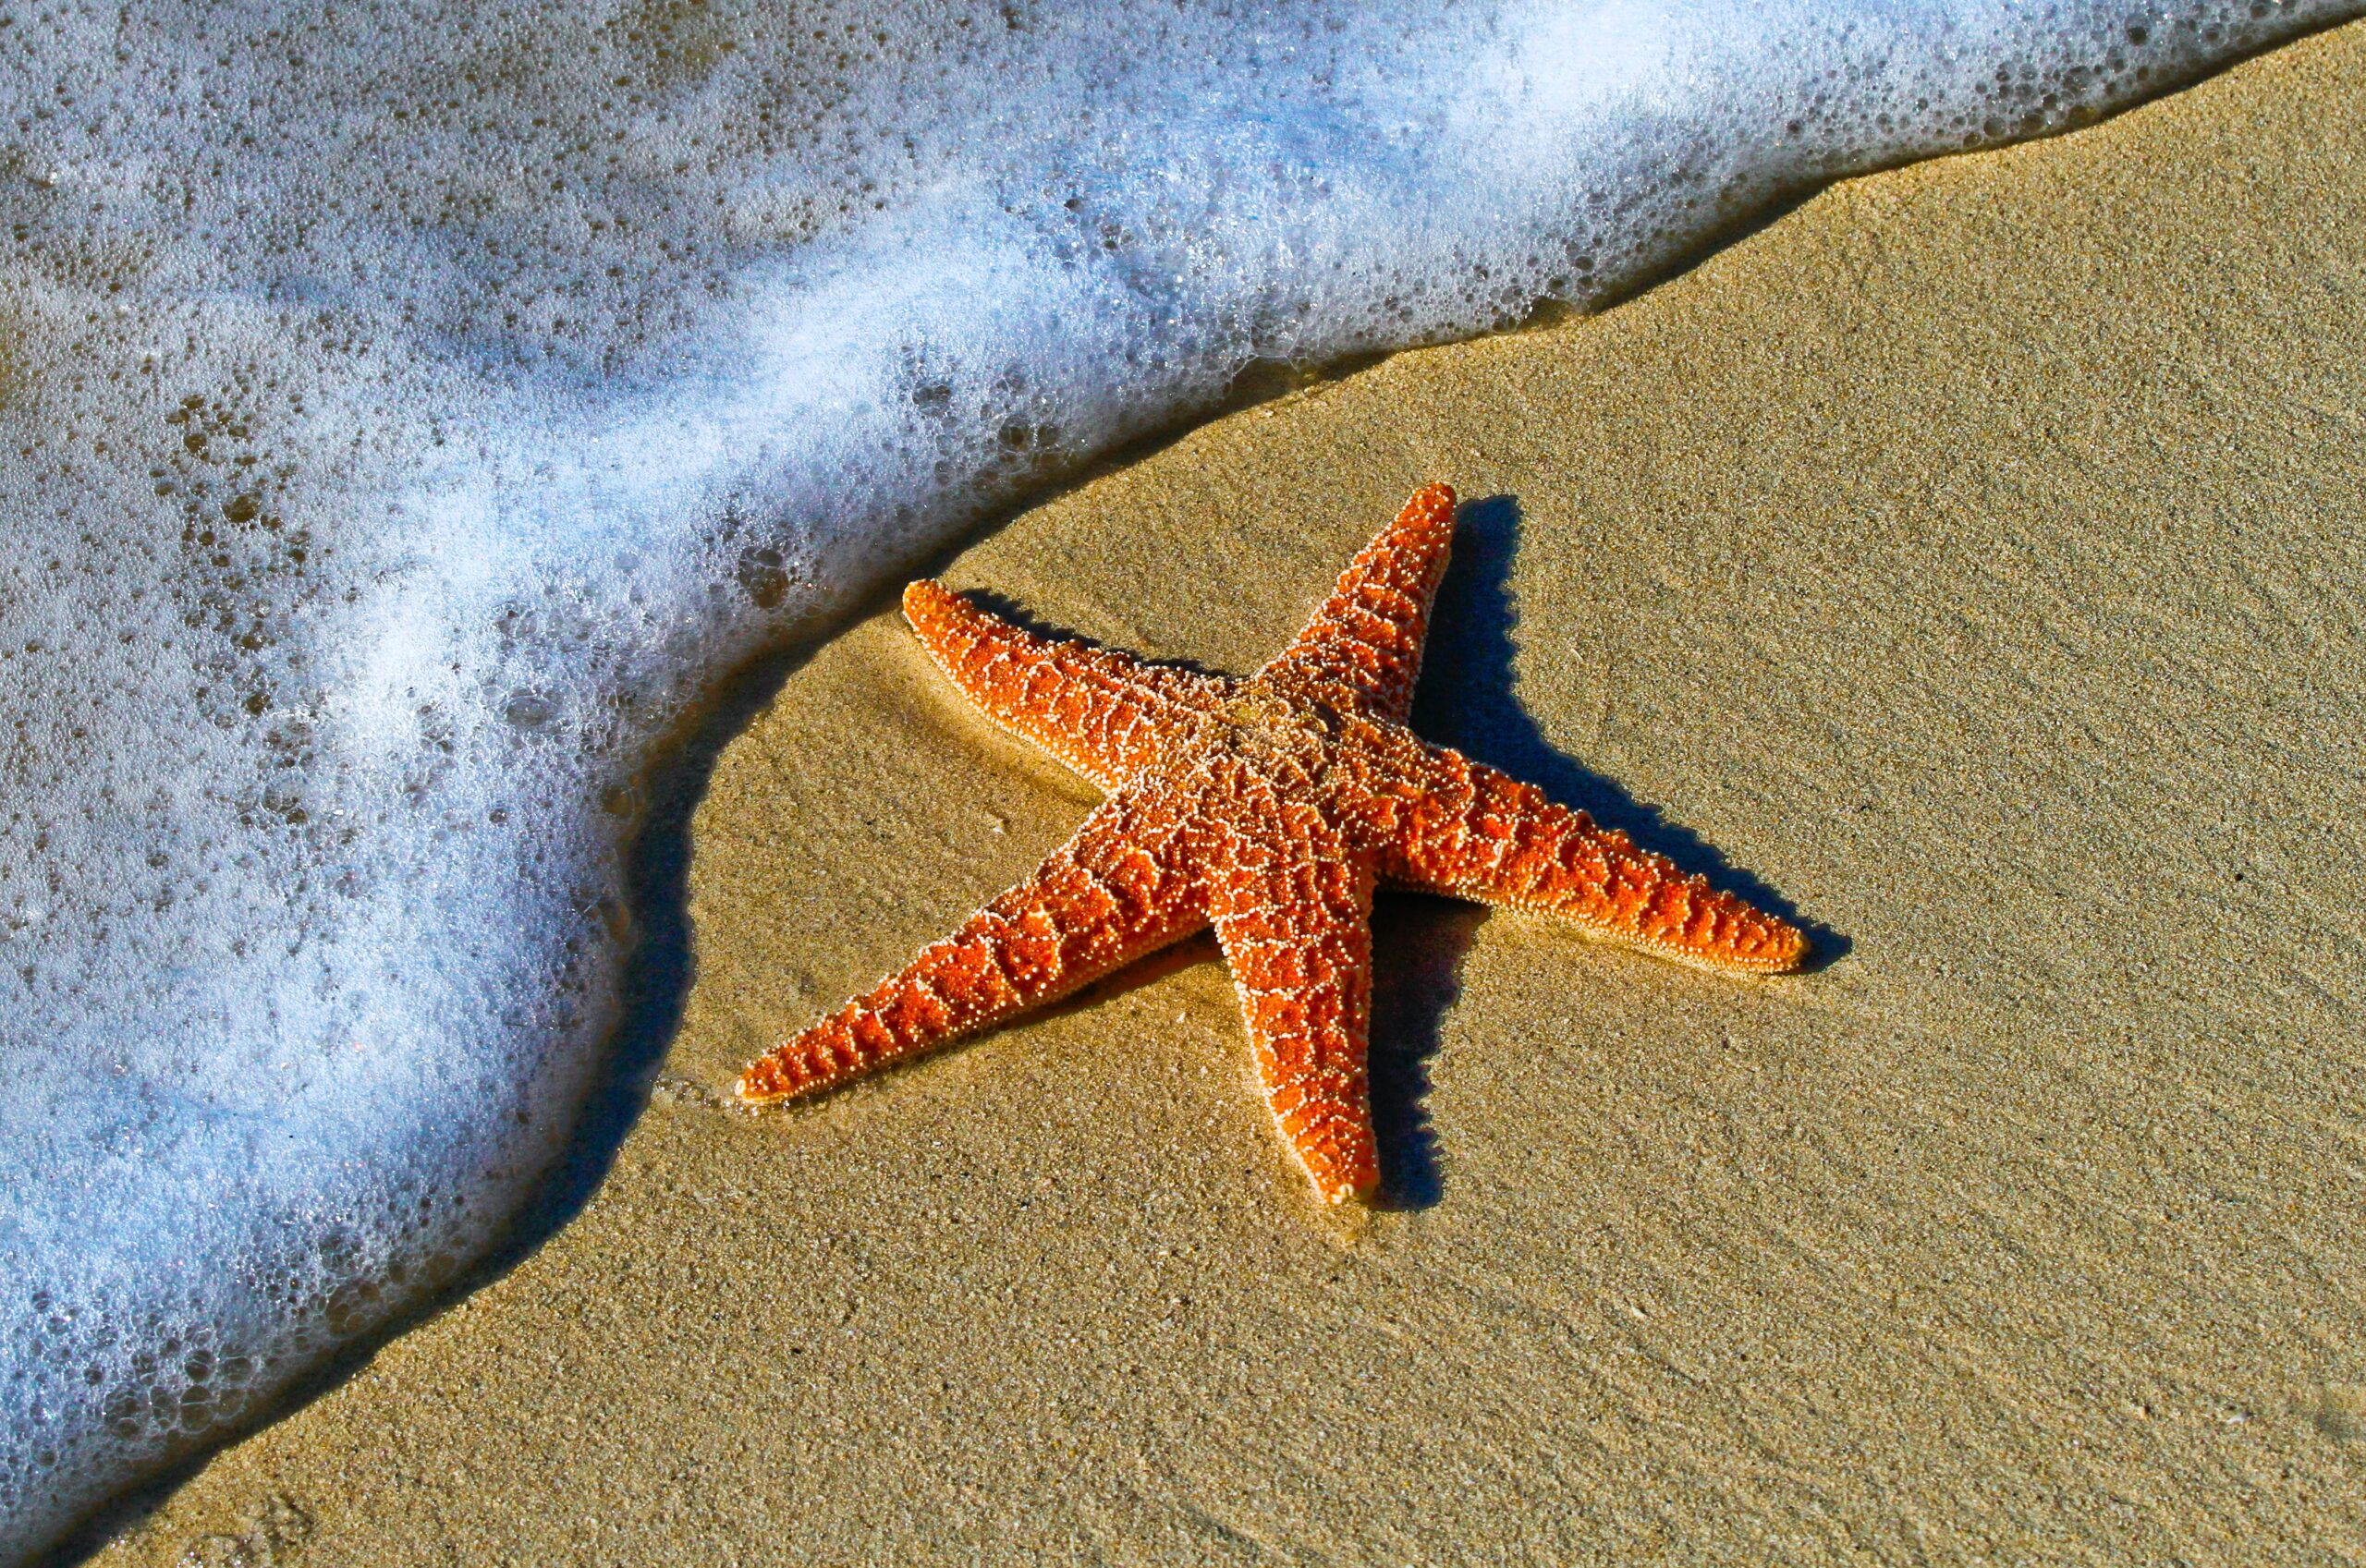 Star fish on sand